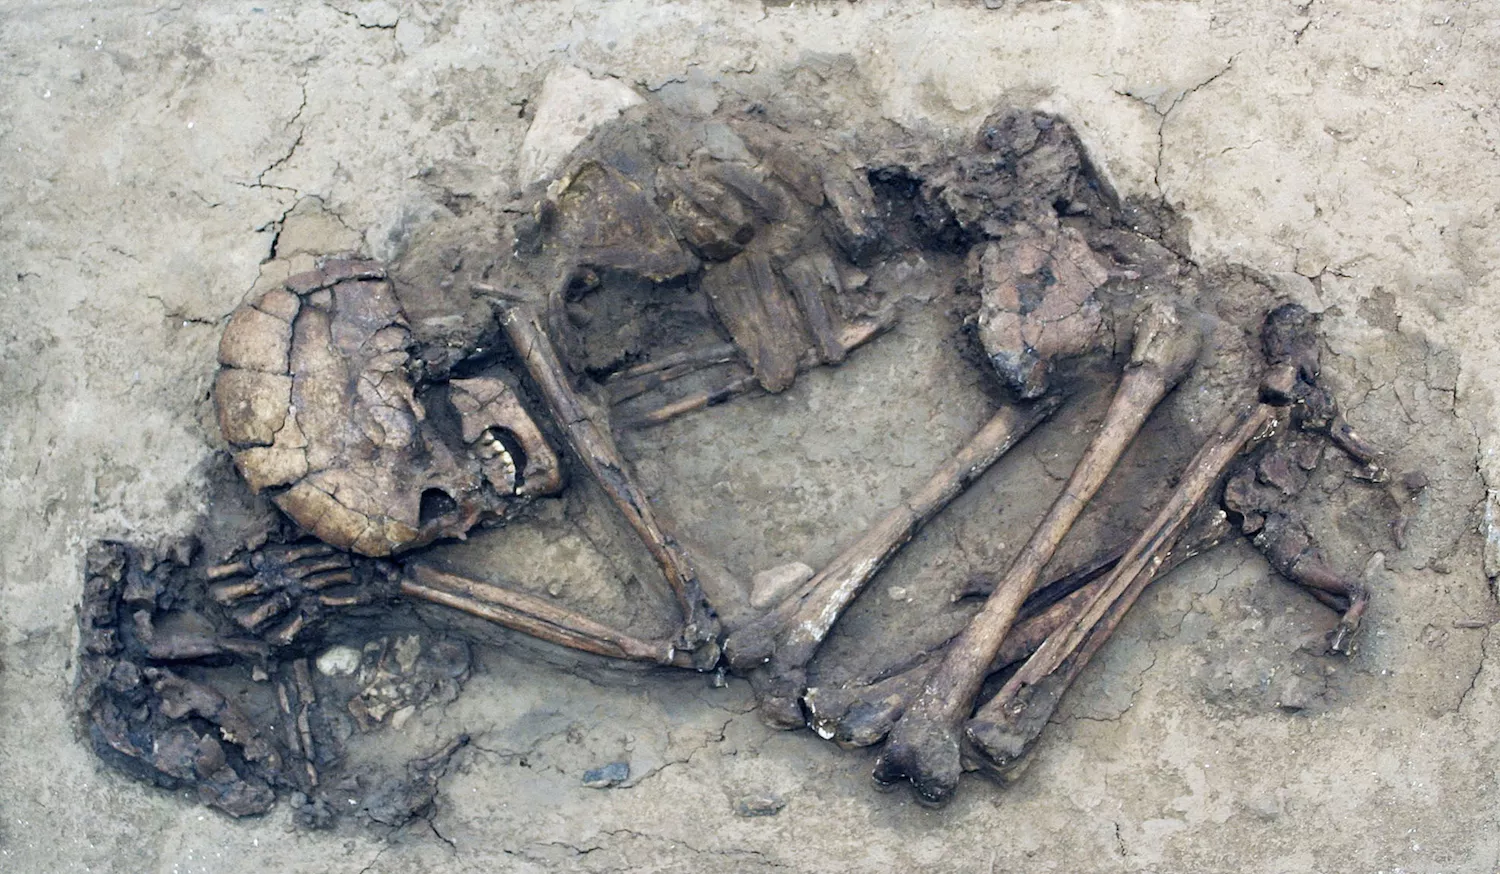 Arraulit prop del cap de la seva mestressa, aquest és el primer gos trobat en un enterrament humà, al jaciment israelià d’Ain-Mallaha. Data de fa 12.000 anys i pertany a l’anomenada ‘cultura natufiana’, pionera del sedentarisme i precursora de la revolució neolítica